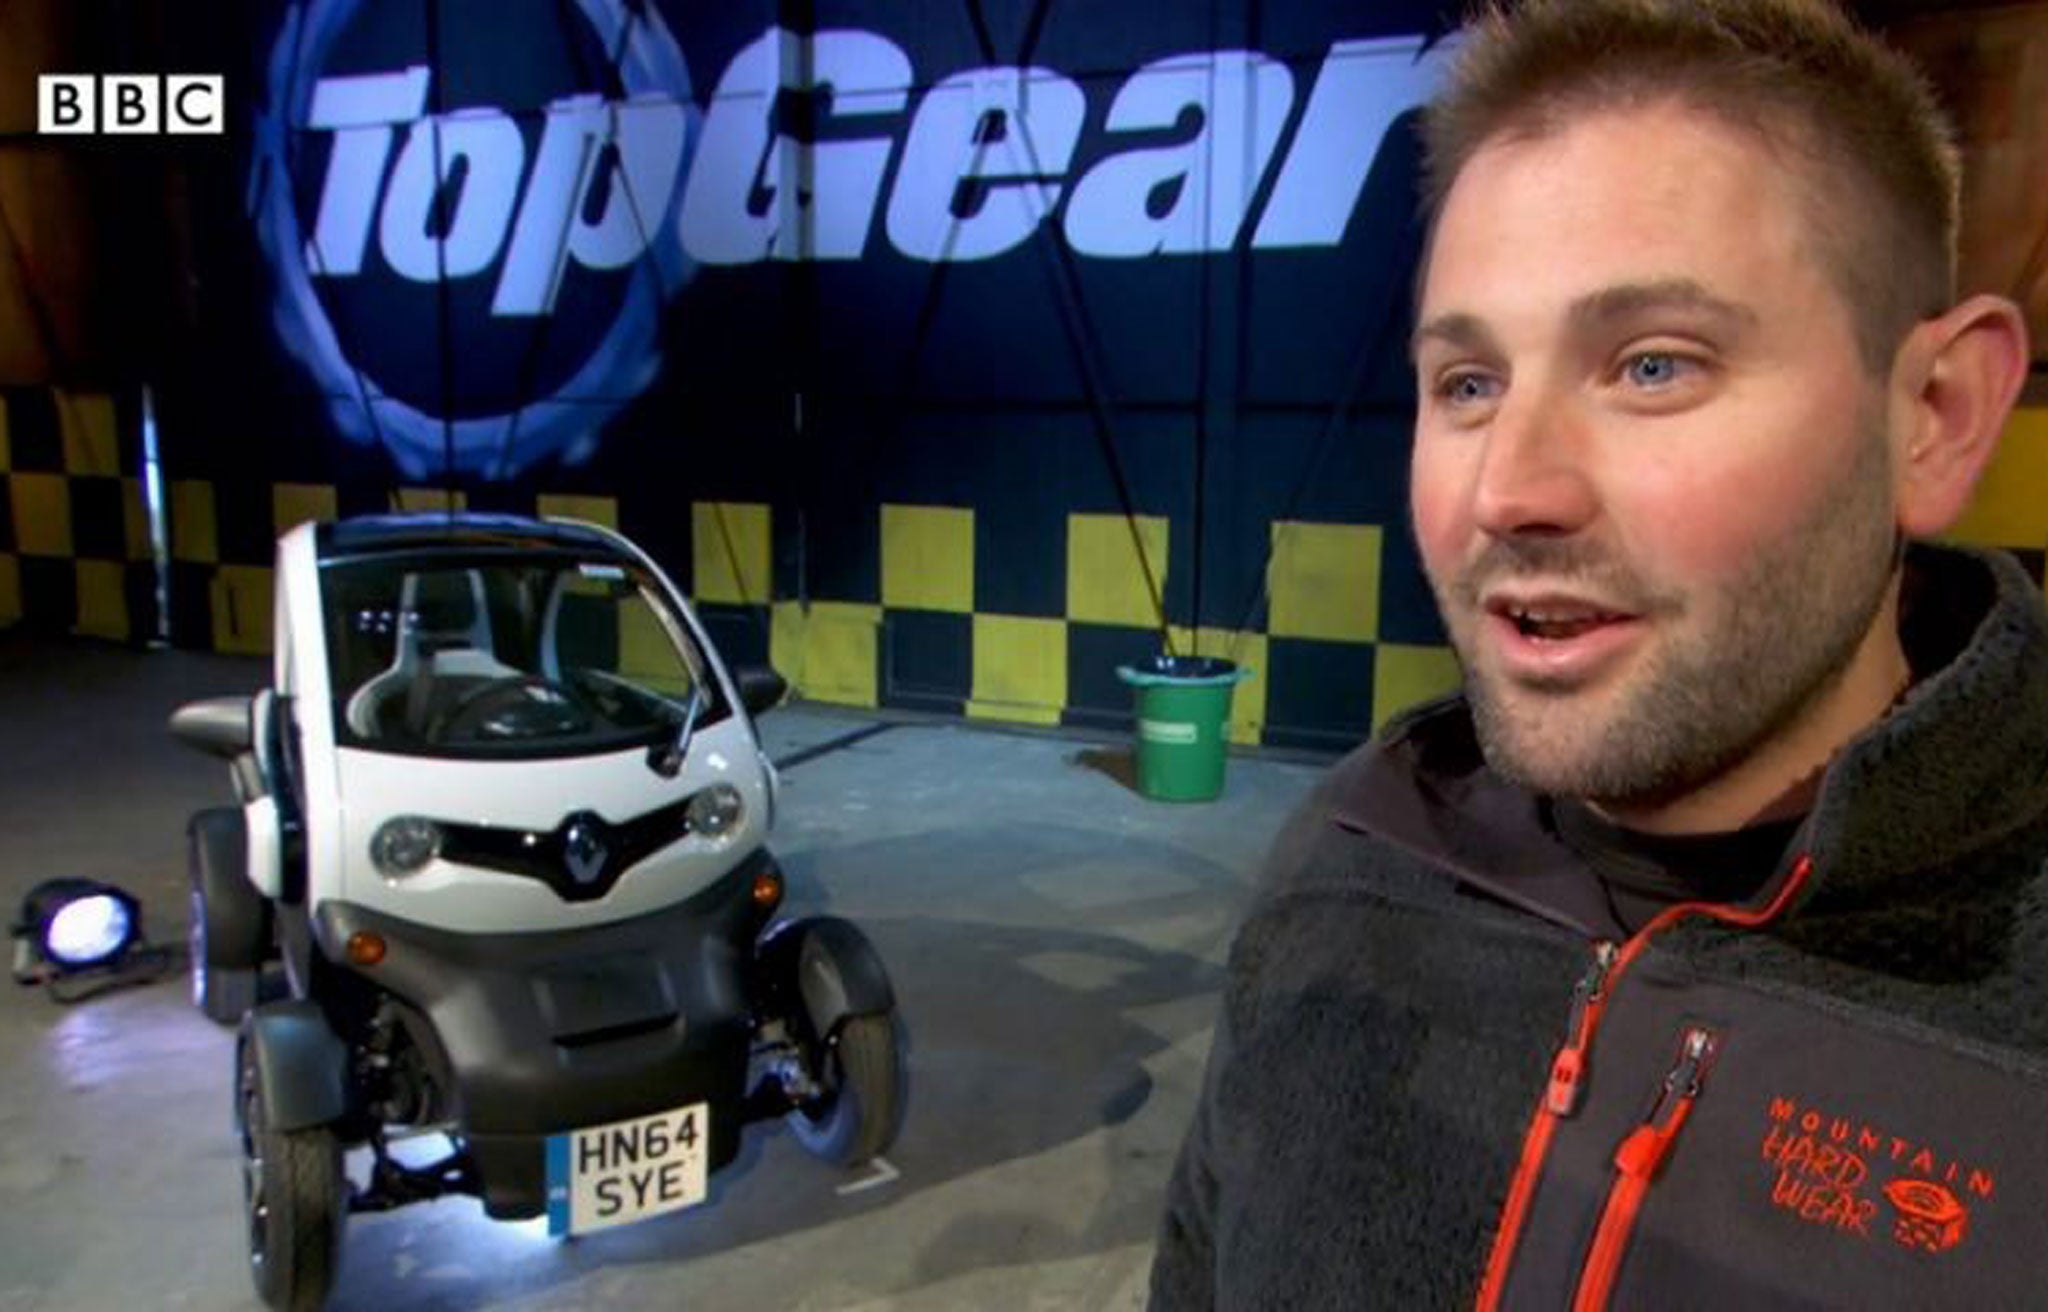 Top Gear show producer Oisin Tymon